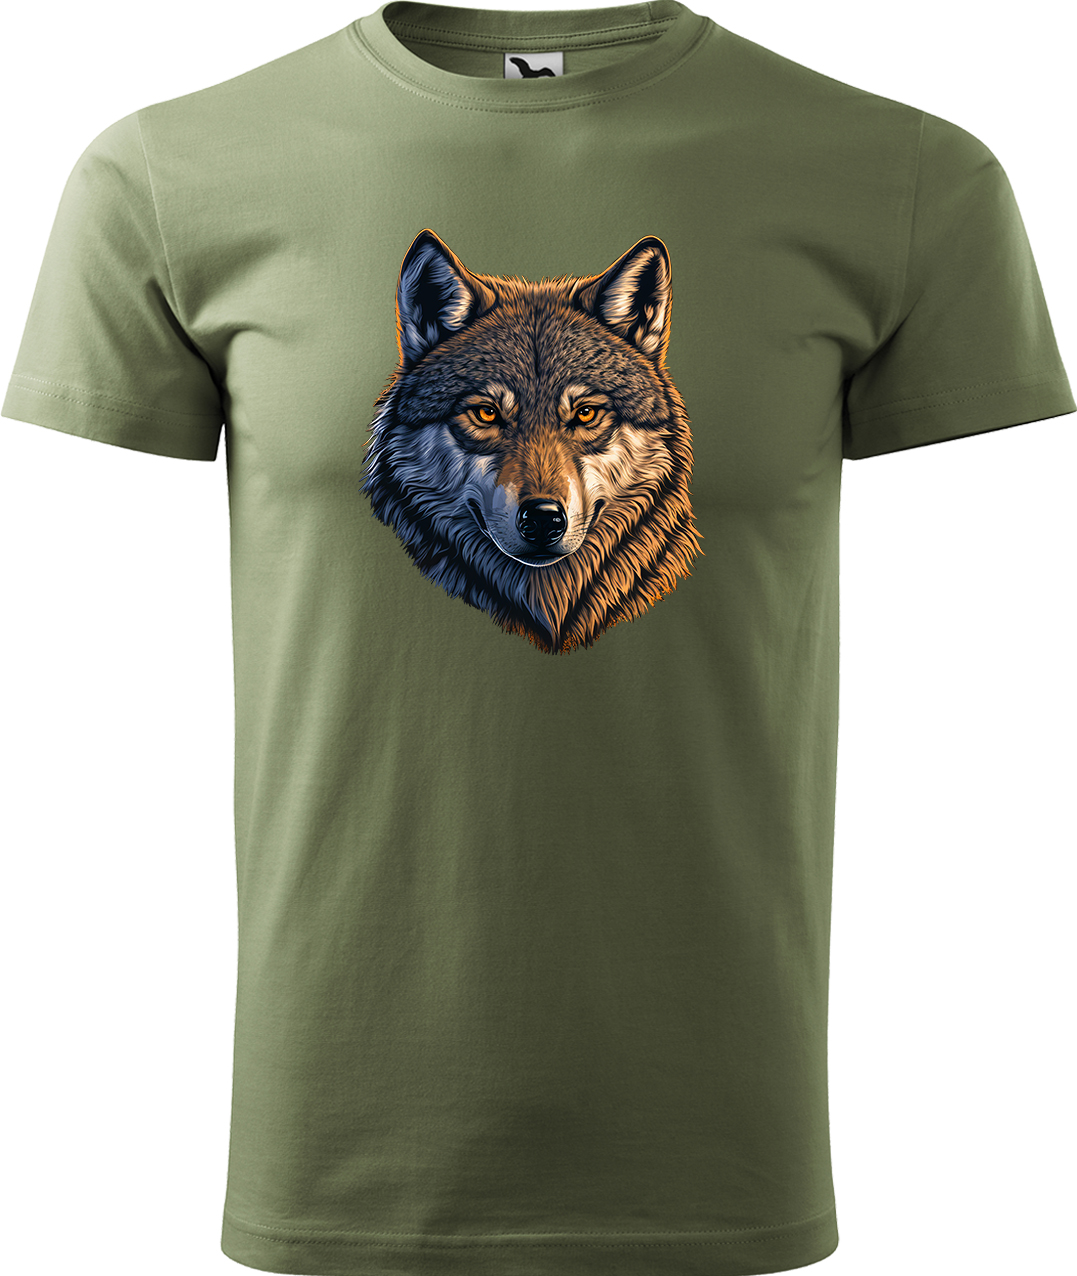 Pánské tričko s vlkem - Hlava vlka Velikost: S, Barva: Světlá khaki (28), Střih: pánský